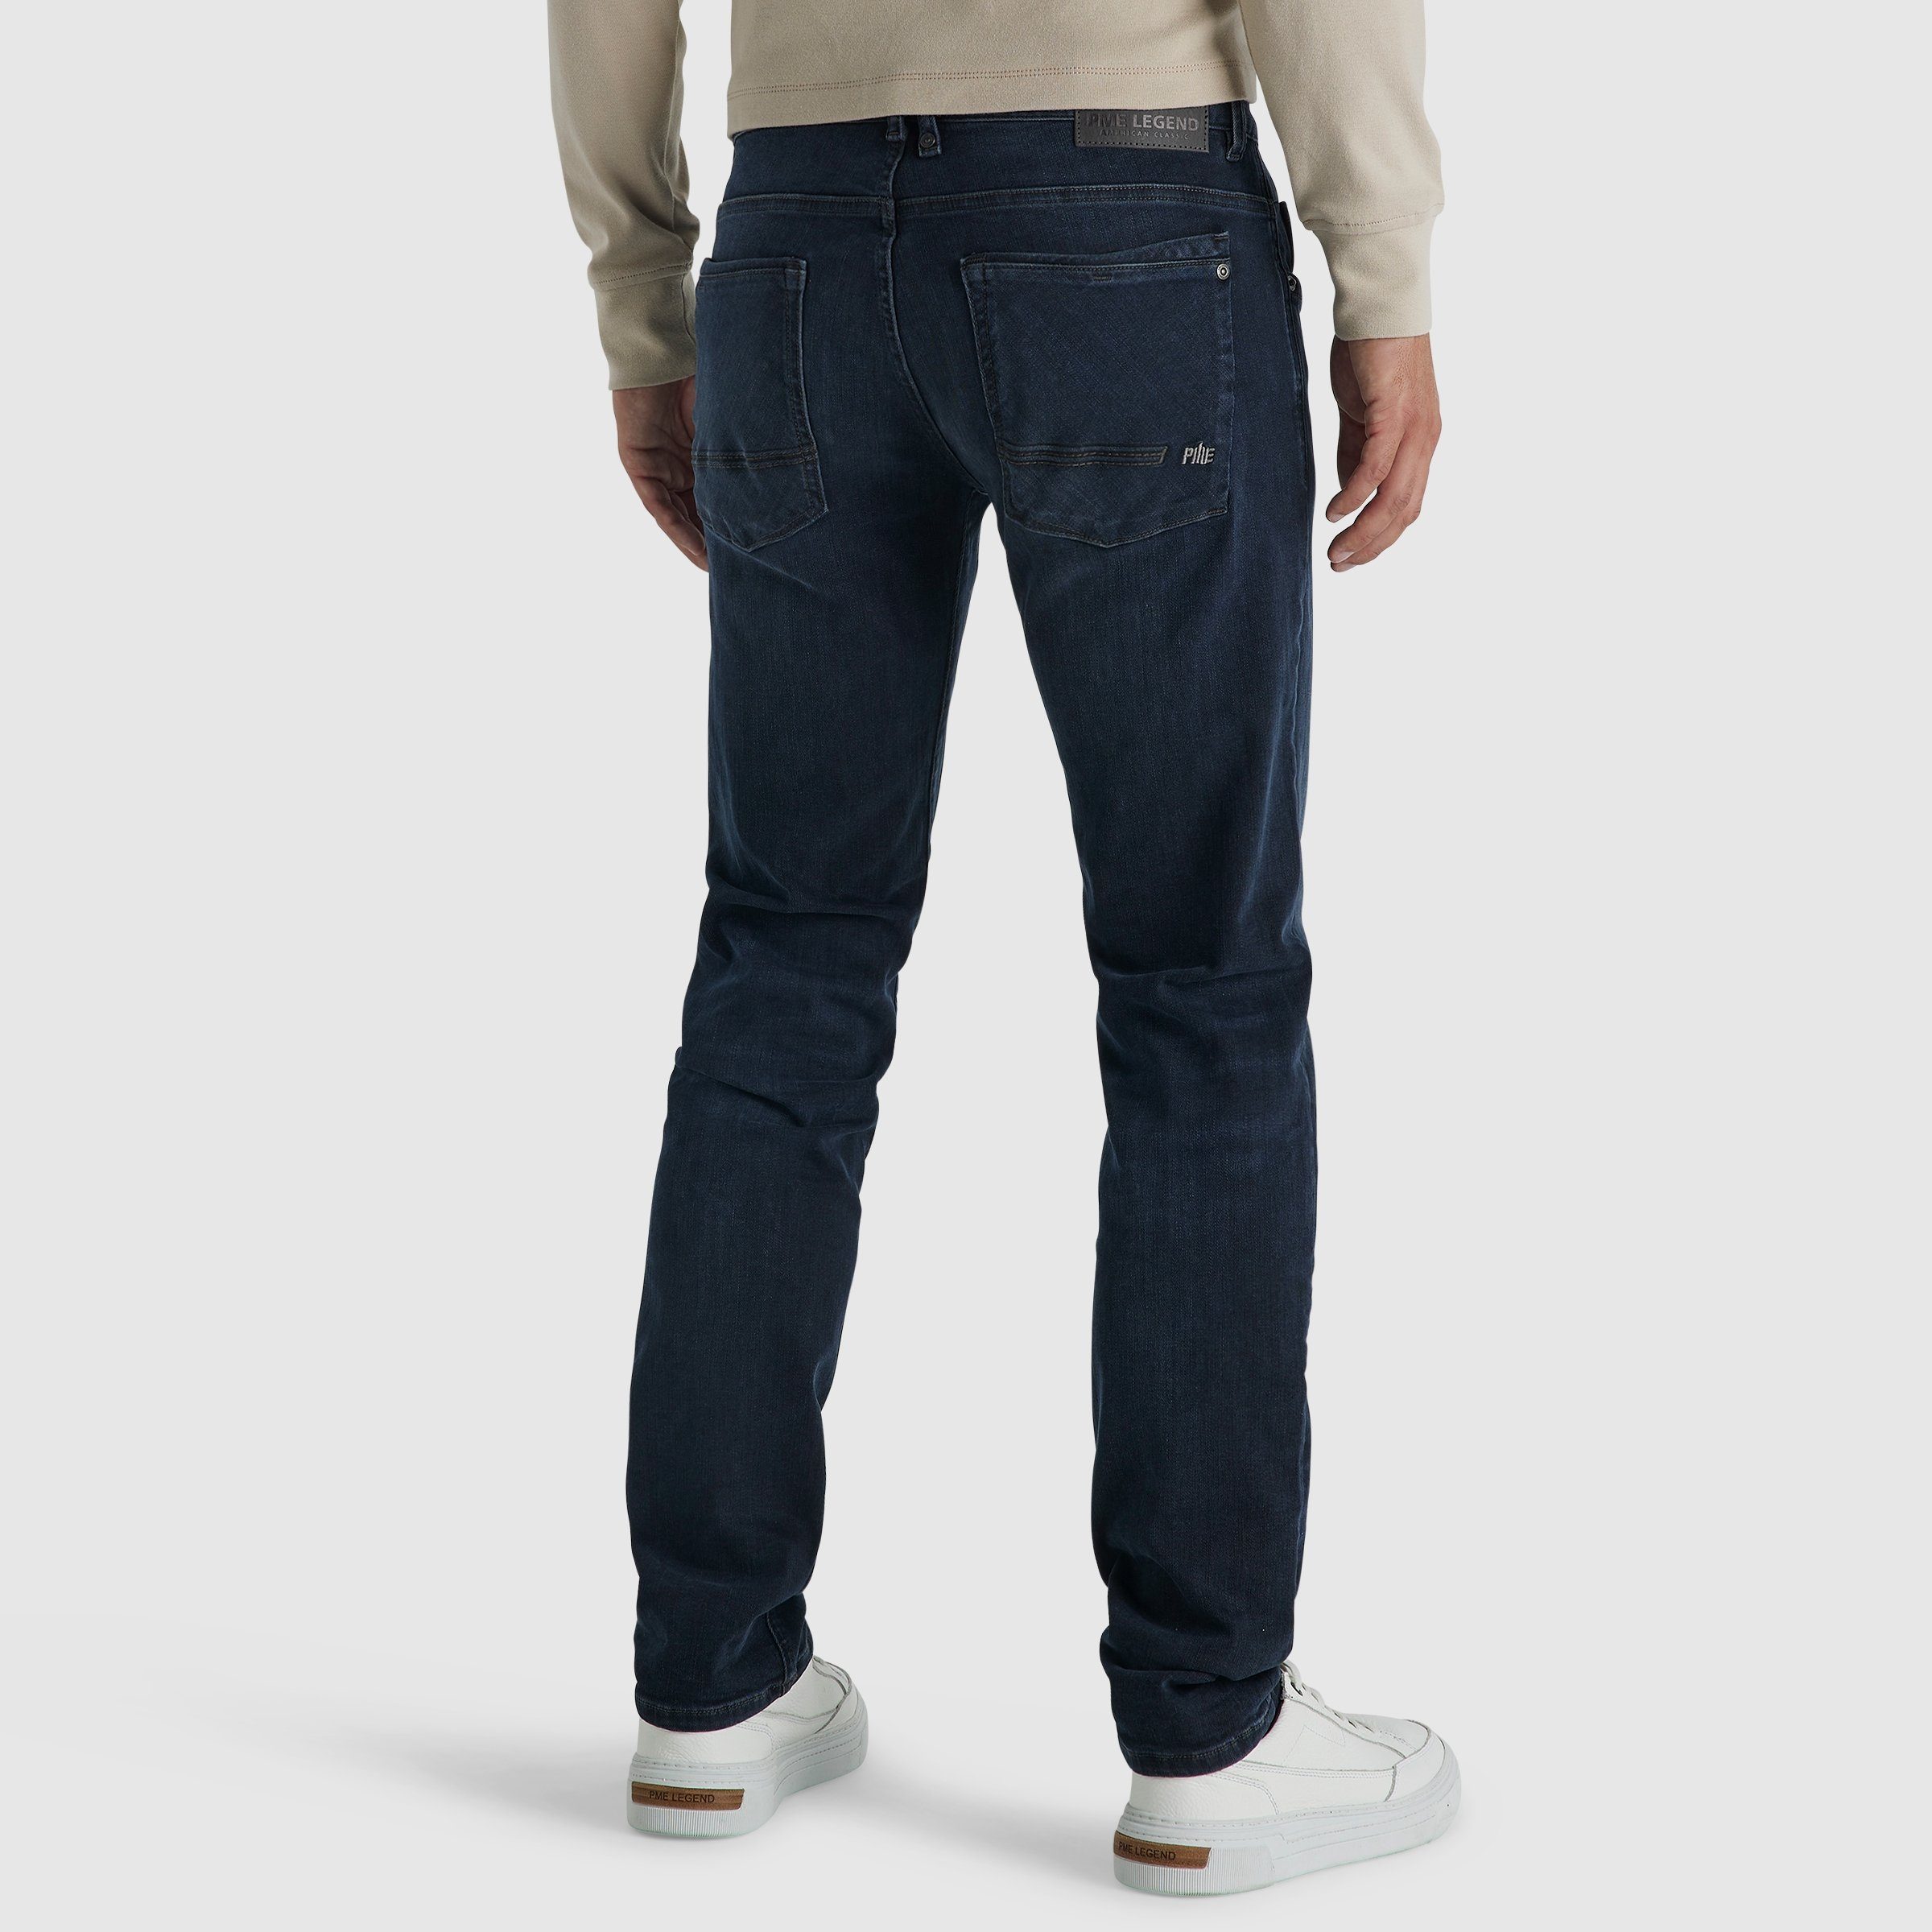 PTR180-CBB LEGEND COMMANDER PME LEGEND blue comfort 5-Pocket-Jeans black PME 3.0